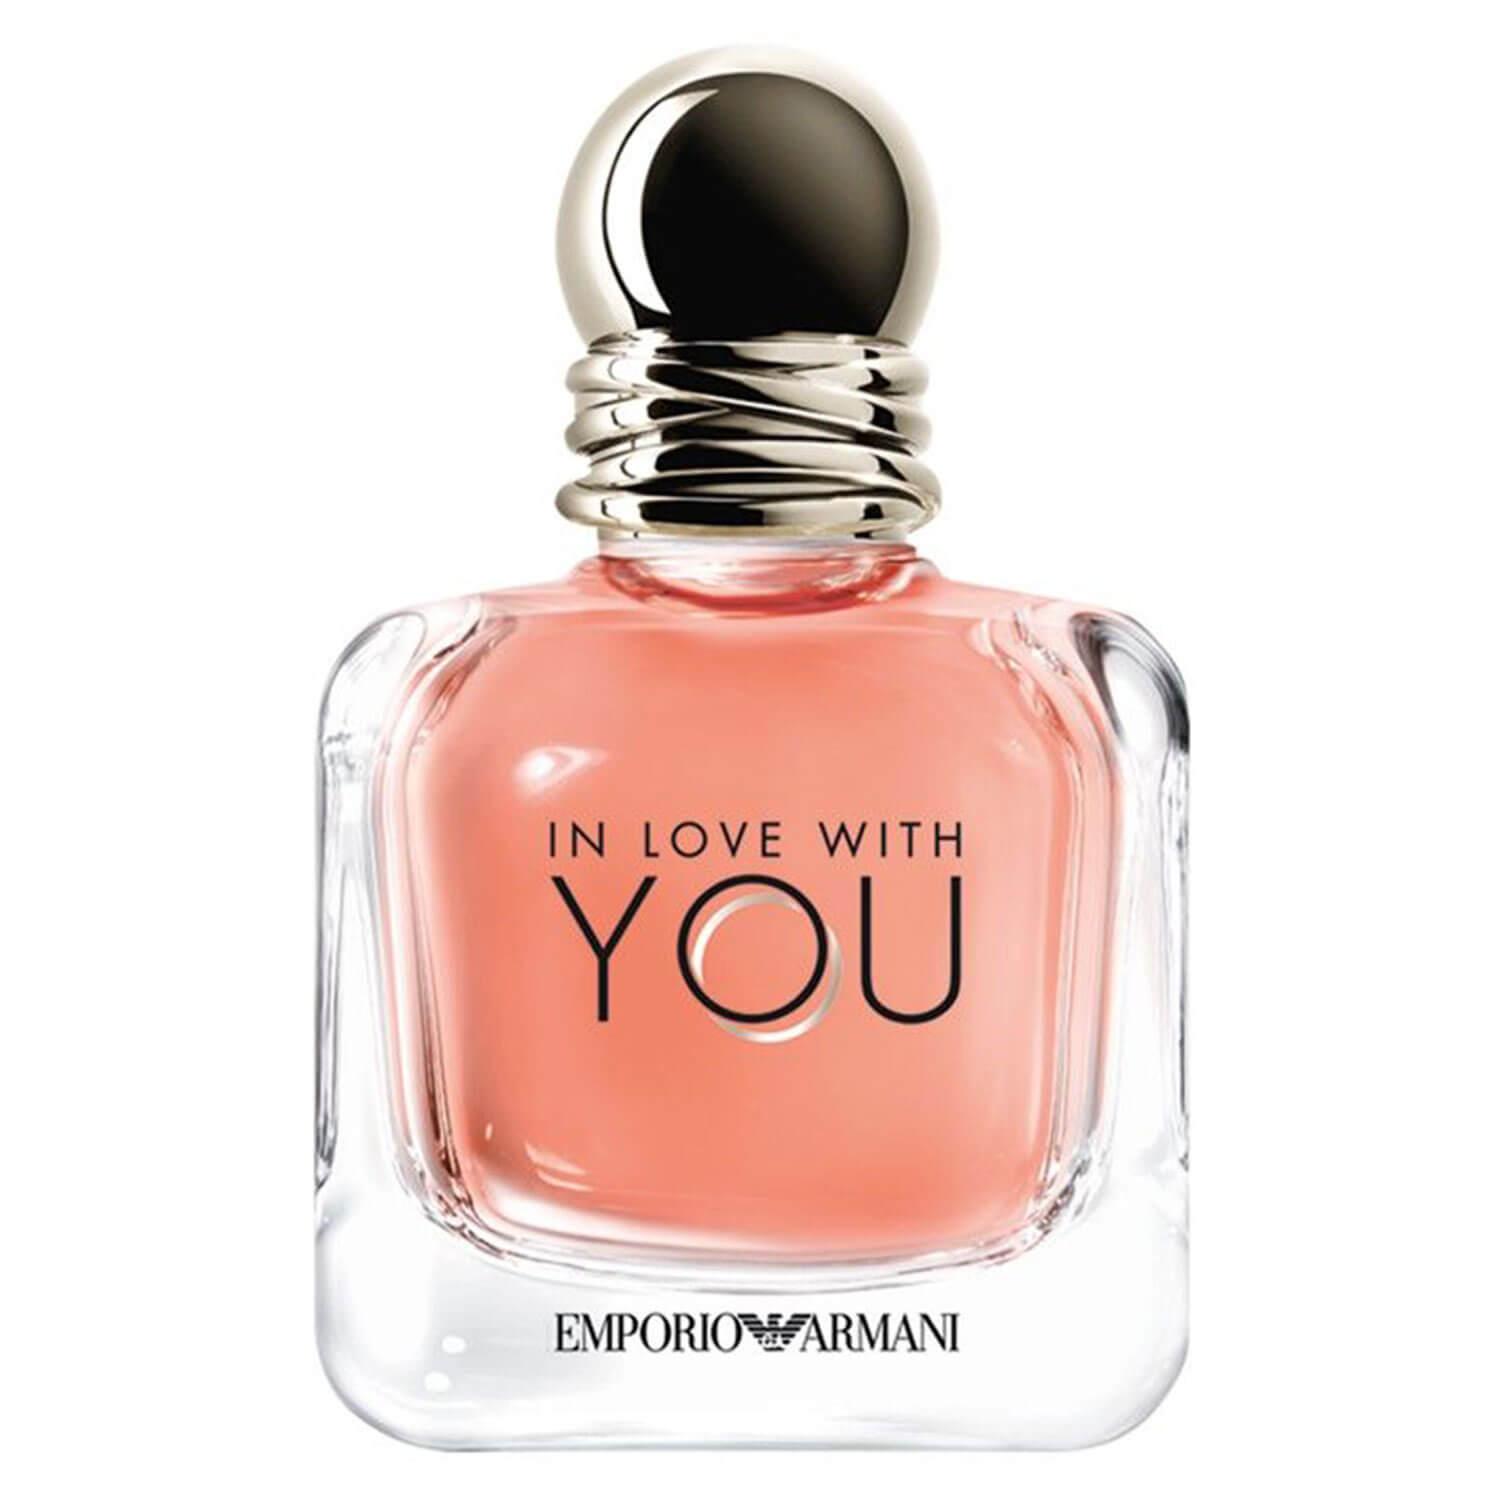 Emporio Armani - In Love With You Eau de Parfum